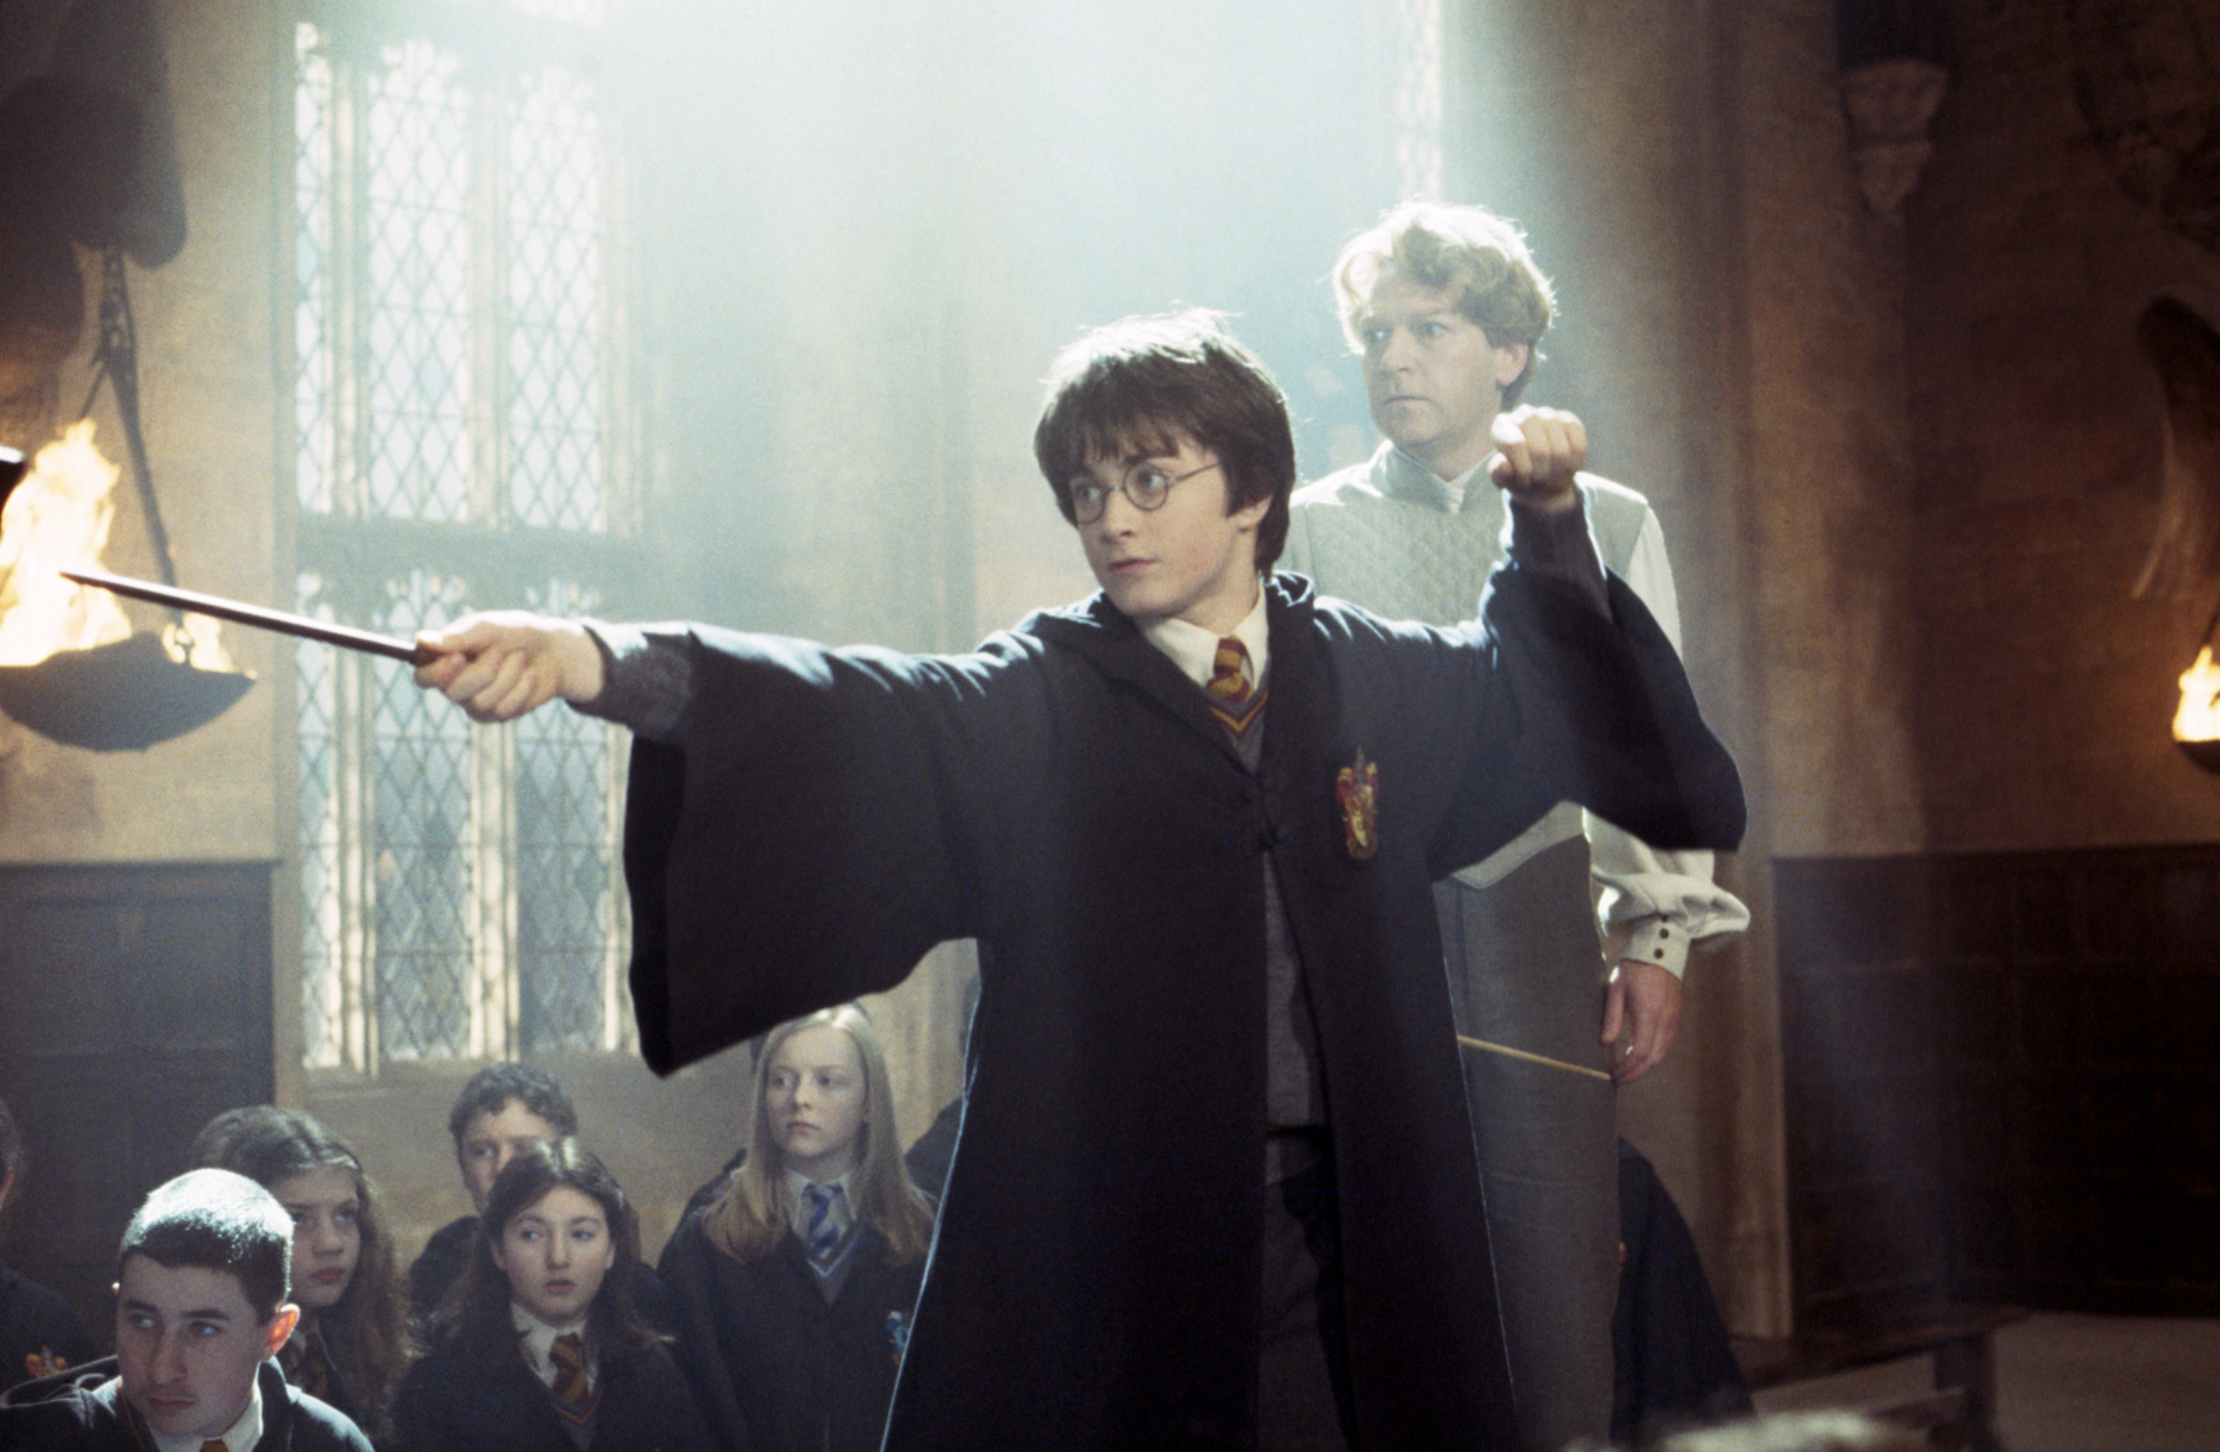 Harry Potter et la chambre des secrets